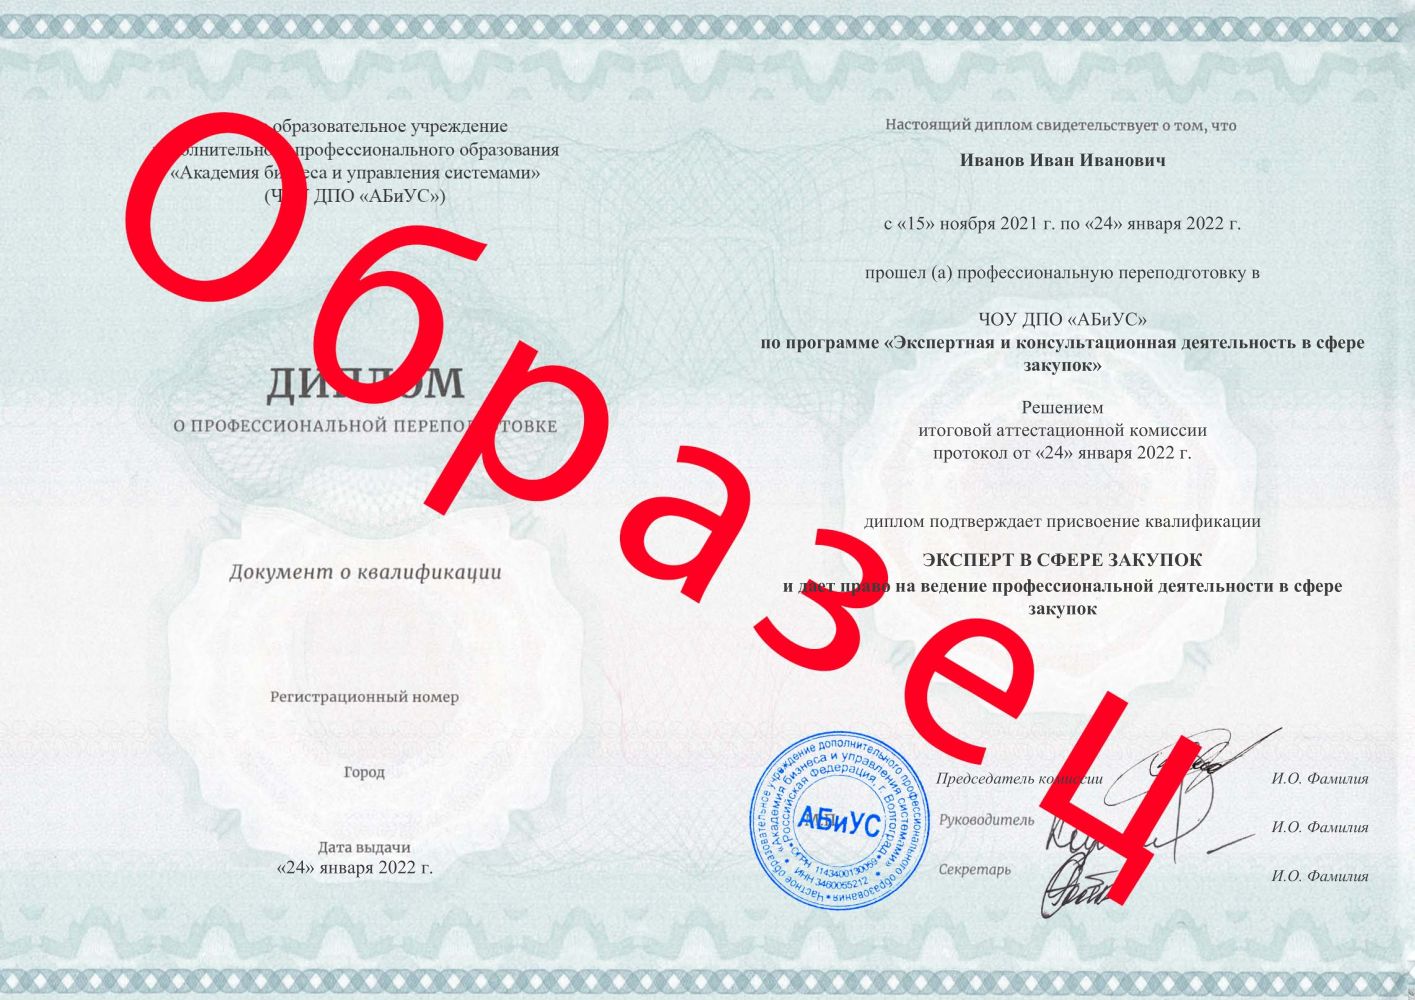 Диплом Экспертная и консультационная деятельность в сфере закупок 260 часов 10625 руб.